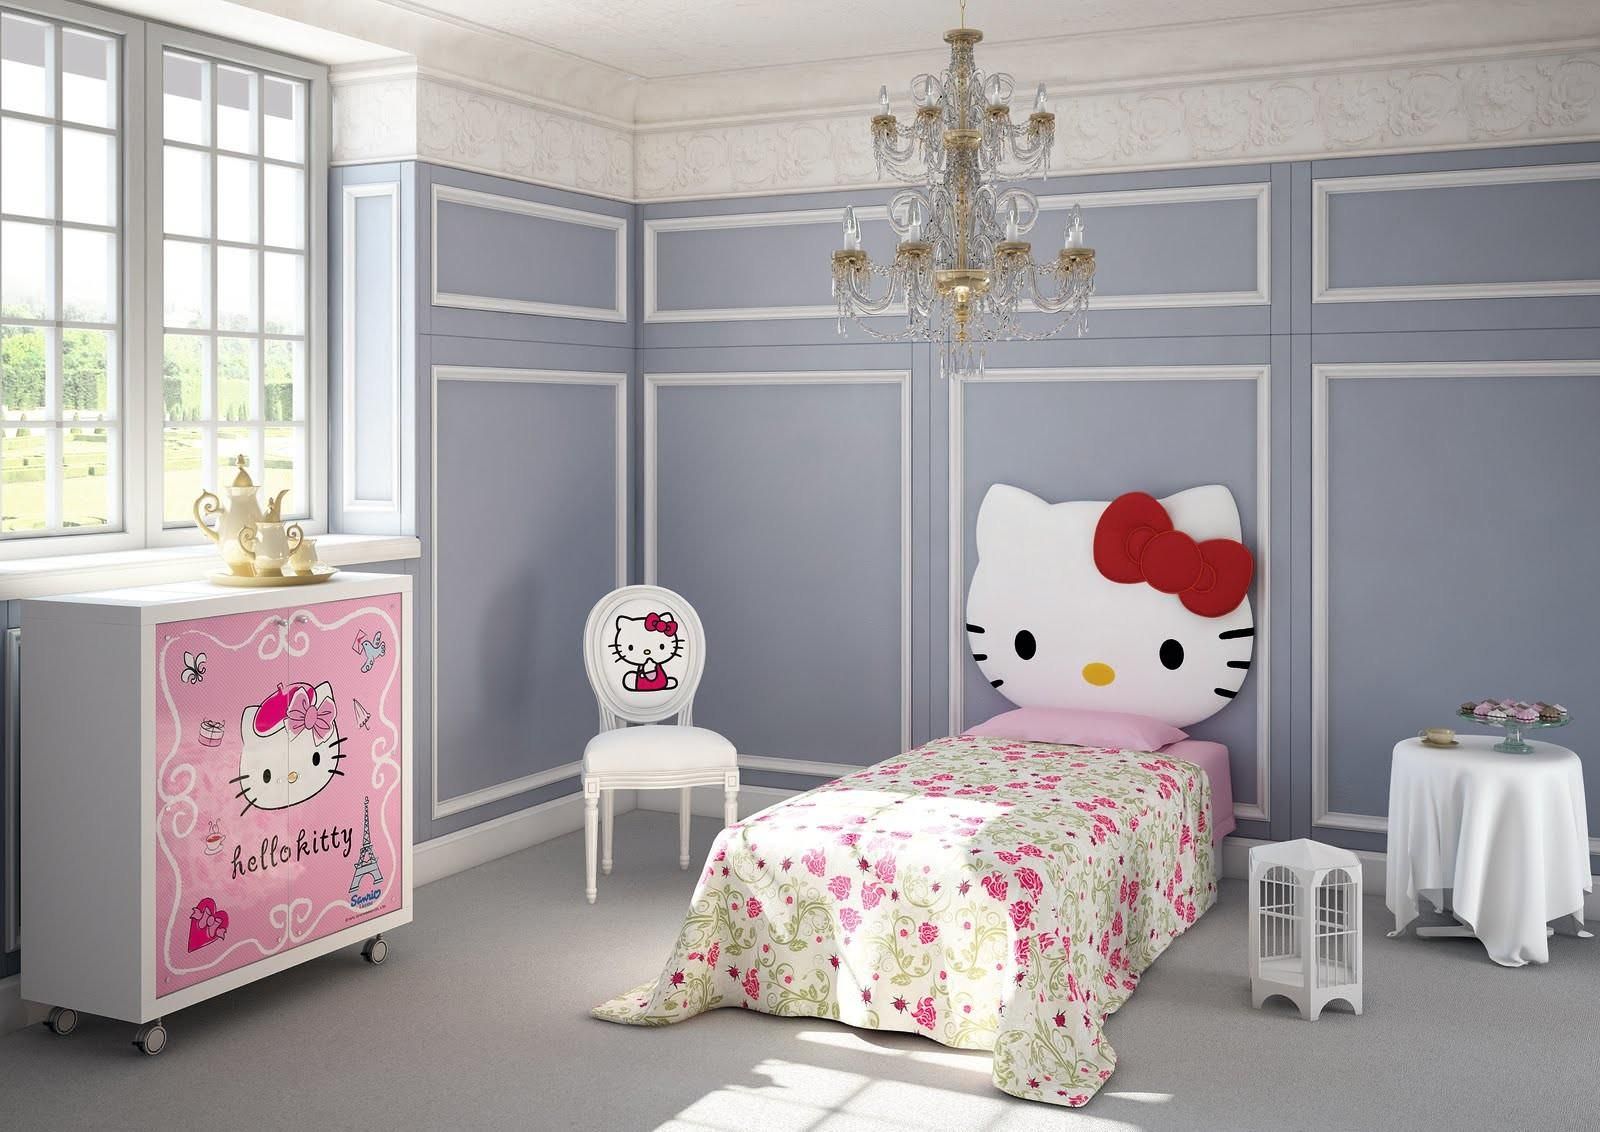 Thiết kế phòng ngủ cho bé phong cách tân cổ điển với gam màu xanh lam pastel nhẹ nhàng và điểm nhấn từ các vật dụng trang trí có hình Hello Kitty